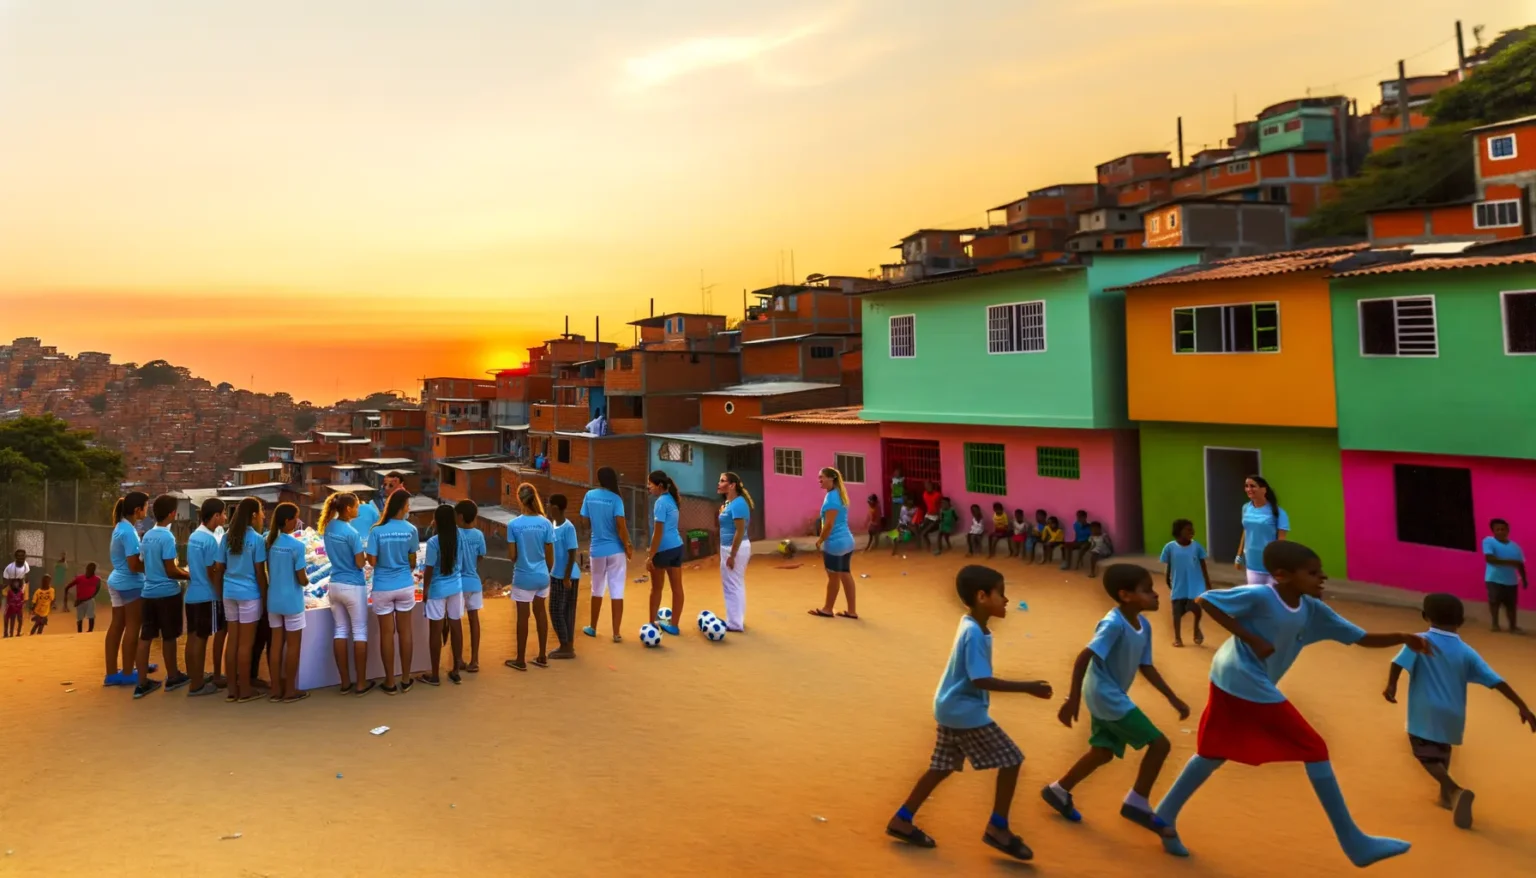 Gruppe von Kindern und Jugendlichen in blauen T-Shirts, die offenbar an einer Freiluft-Aktivität auf einem staubigen Platz vor farbenfrohen Häusern teilnehmen. Im Hintergrund sind dicht bebaute Hügel unter einem orange-blauen Himmel bei Sonnenuntergang zu sehen. Einige der Kinder spielen mit Fußbällen.